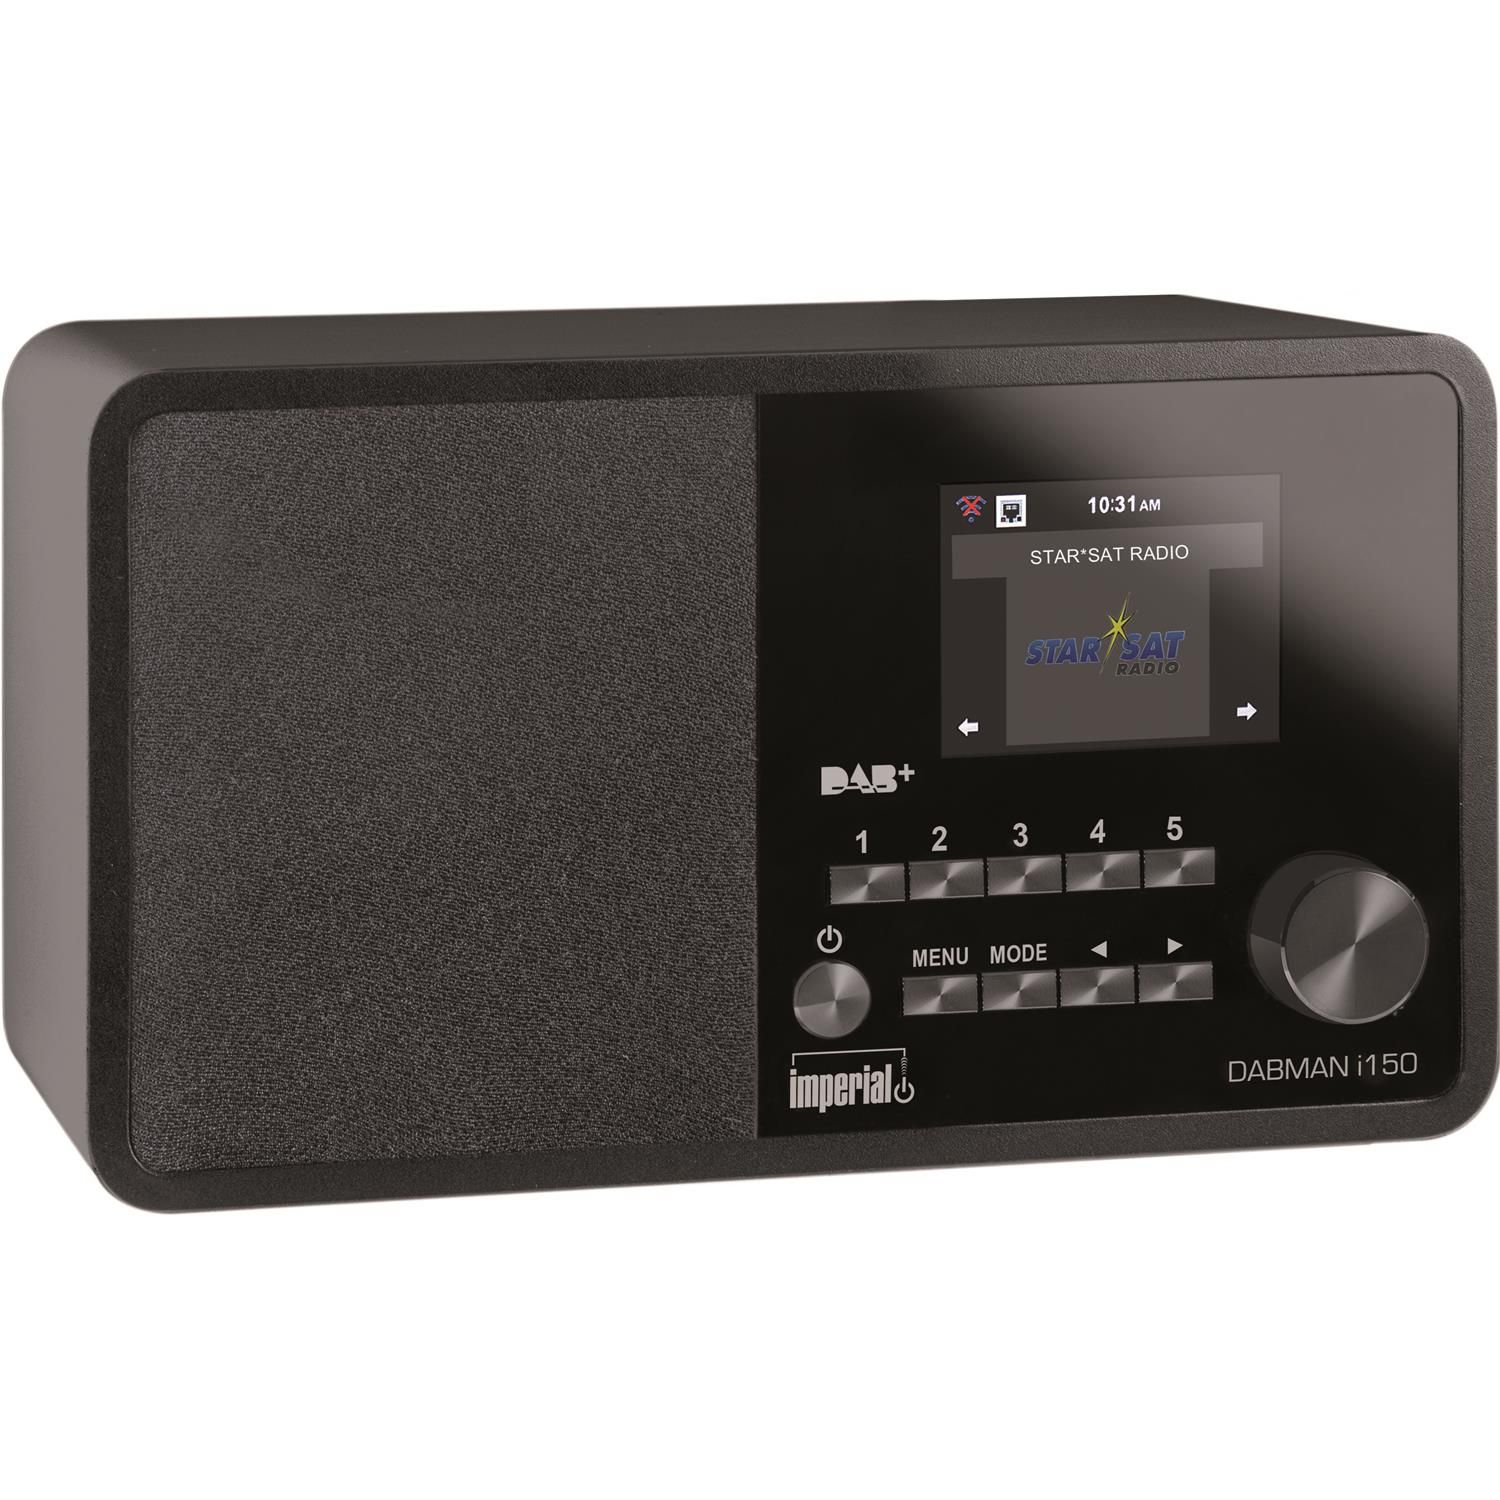 IMPERIAL DABMAN i150 DAB+, Multifunktionsradio, schwarz AM, Bluetooth, FM, DAB, Internet Radio